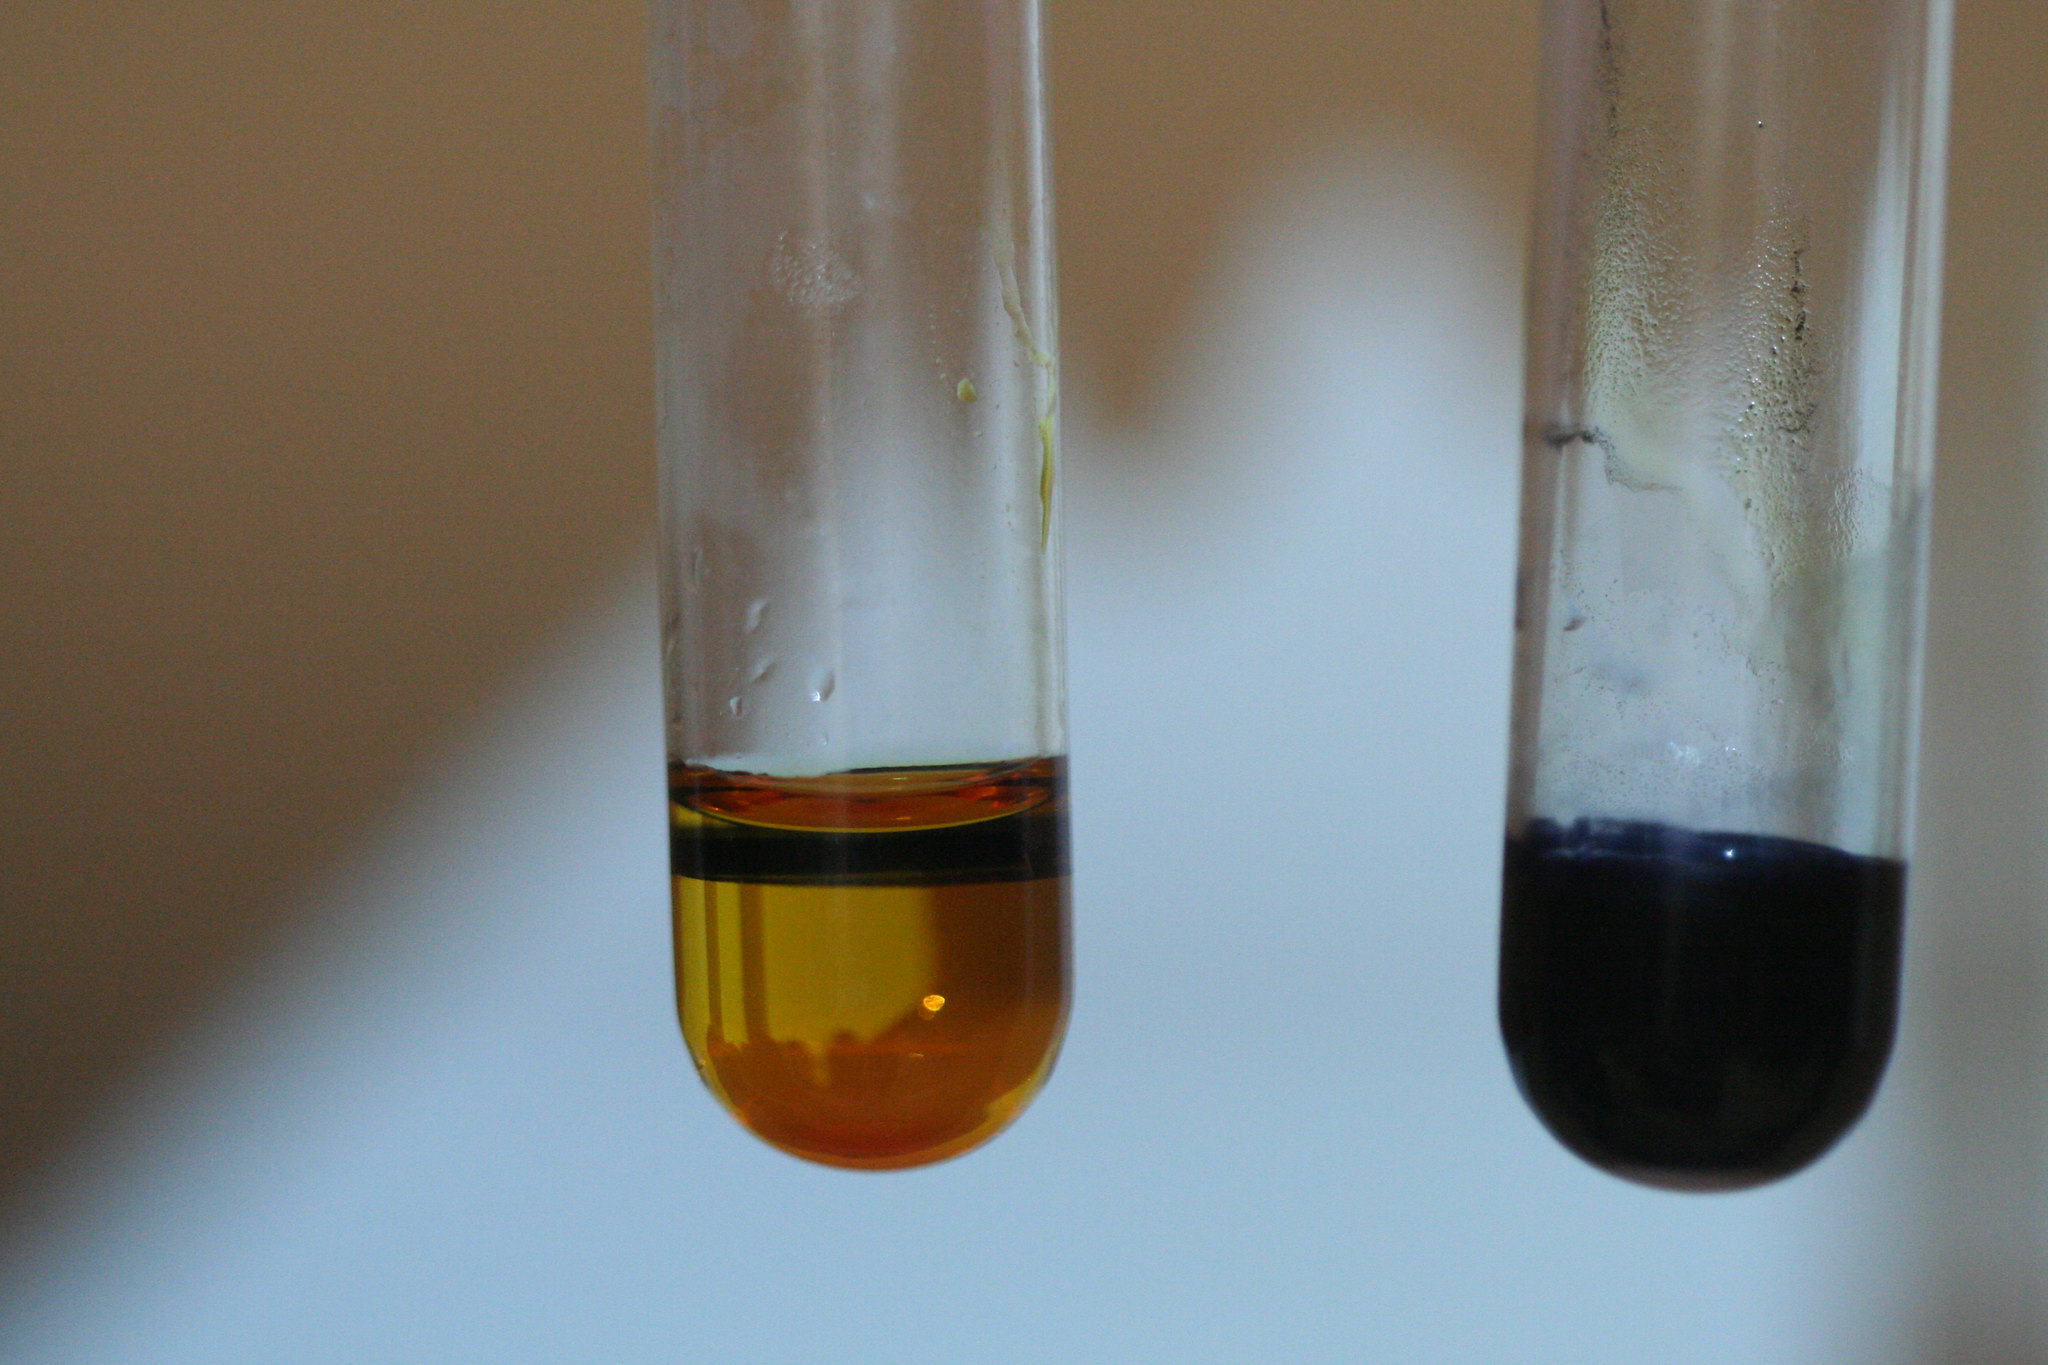 Опыт свинца. Hg2i2 цвет осадка. Хлорид меди в пробирке. Пробирка с раствором. Реакция в пробирке.